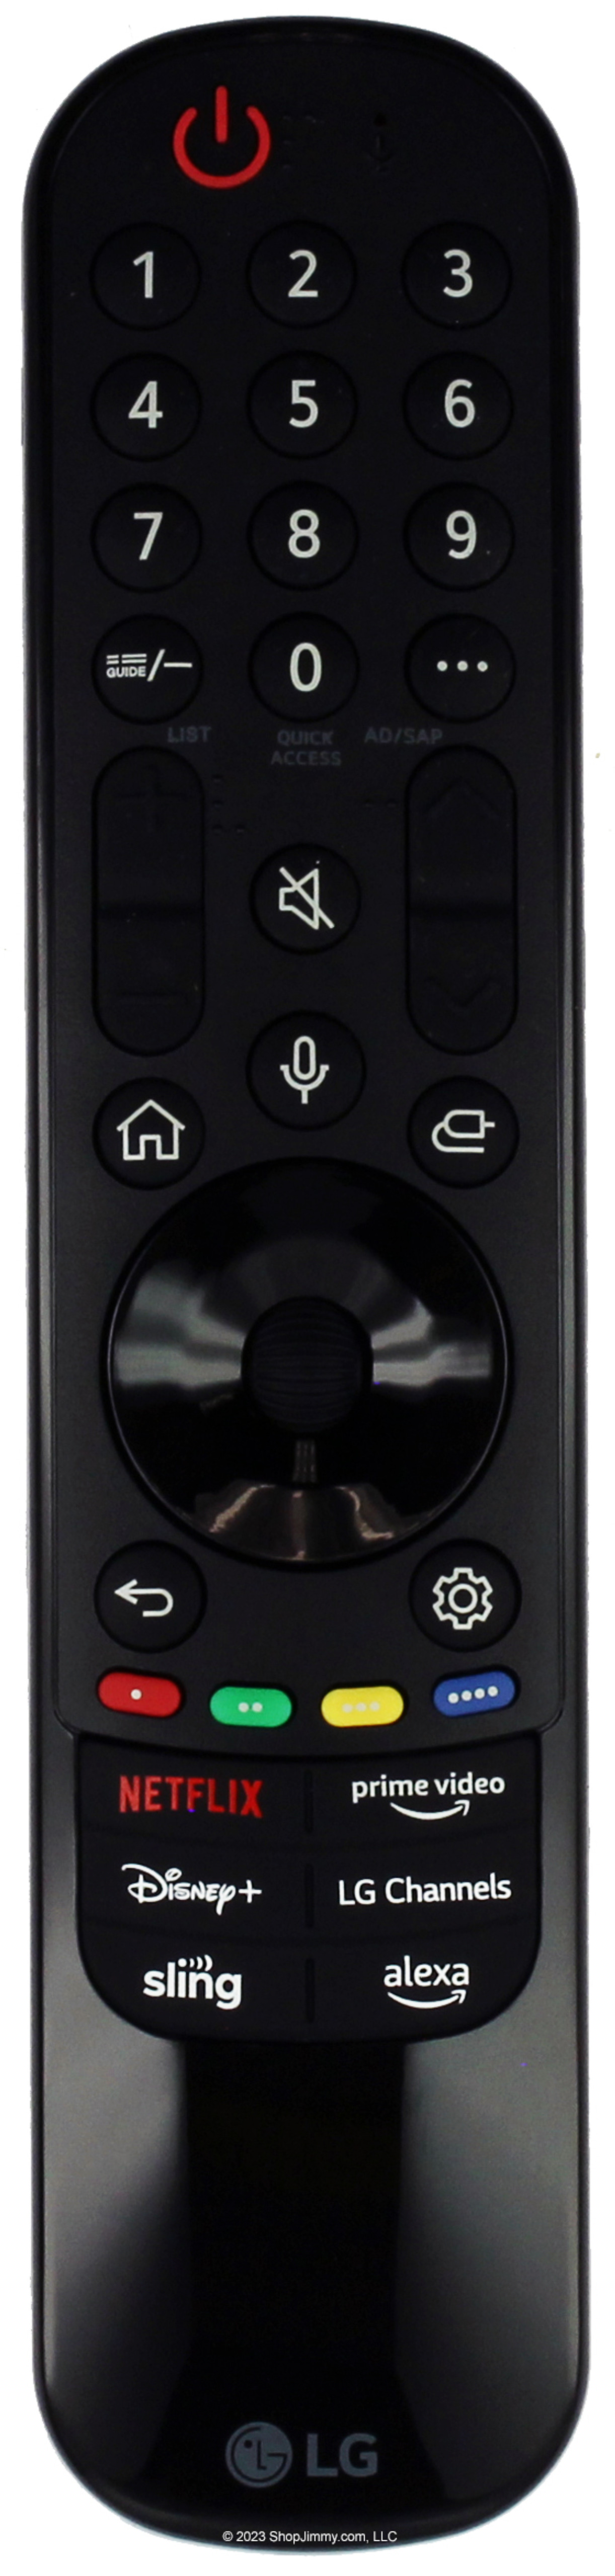 Control Magic Remote LG 2023 MR23GA